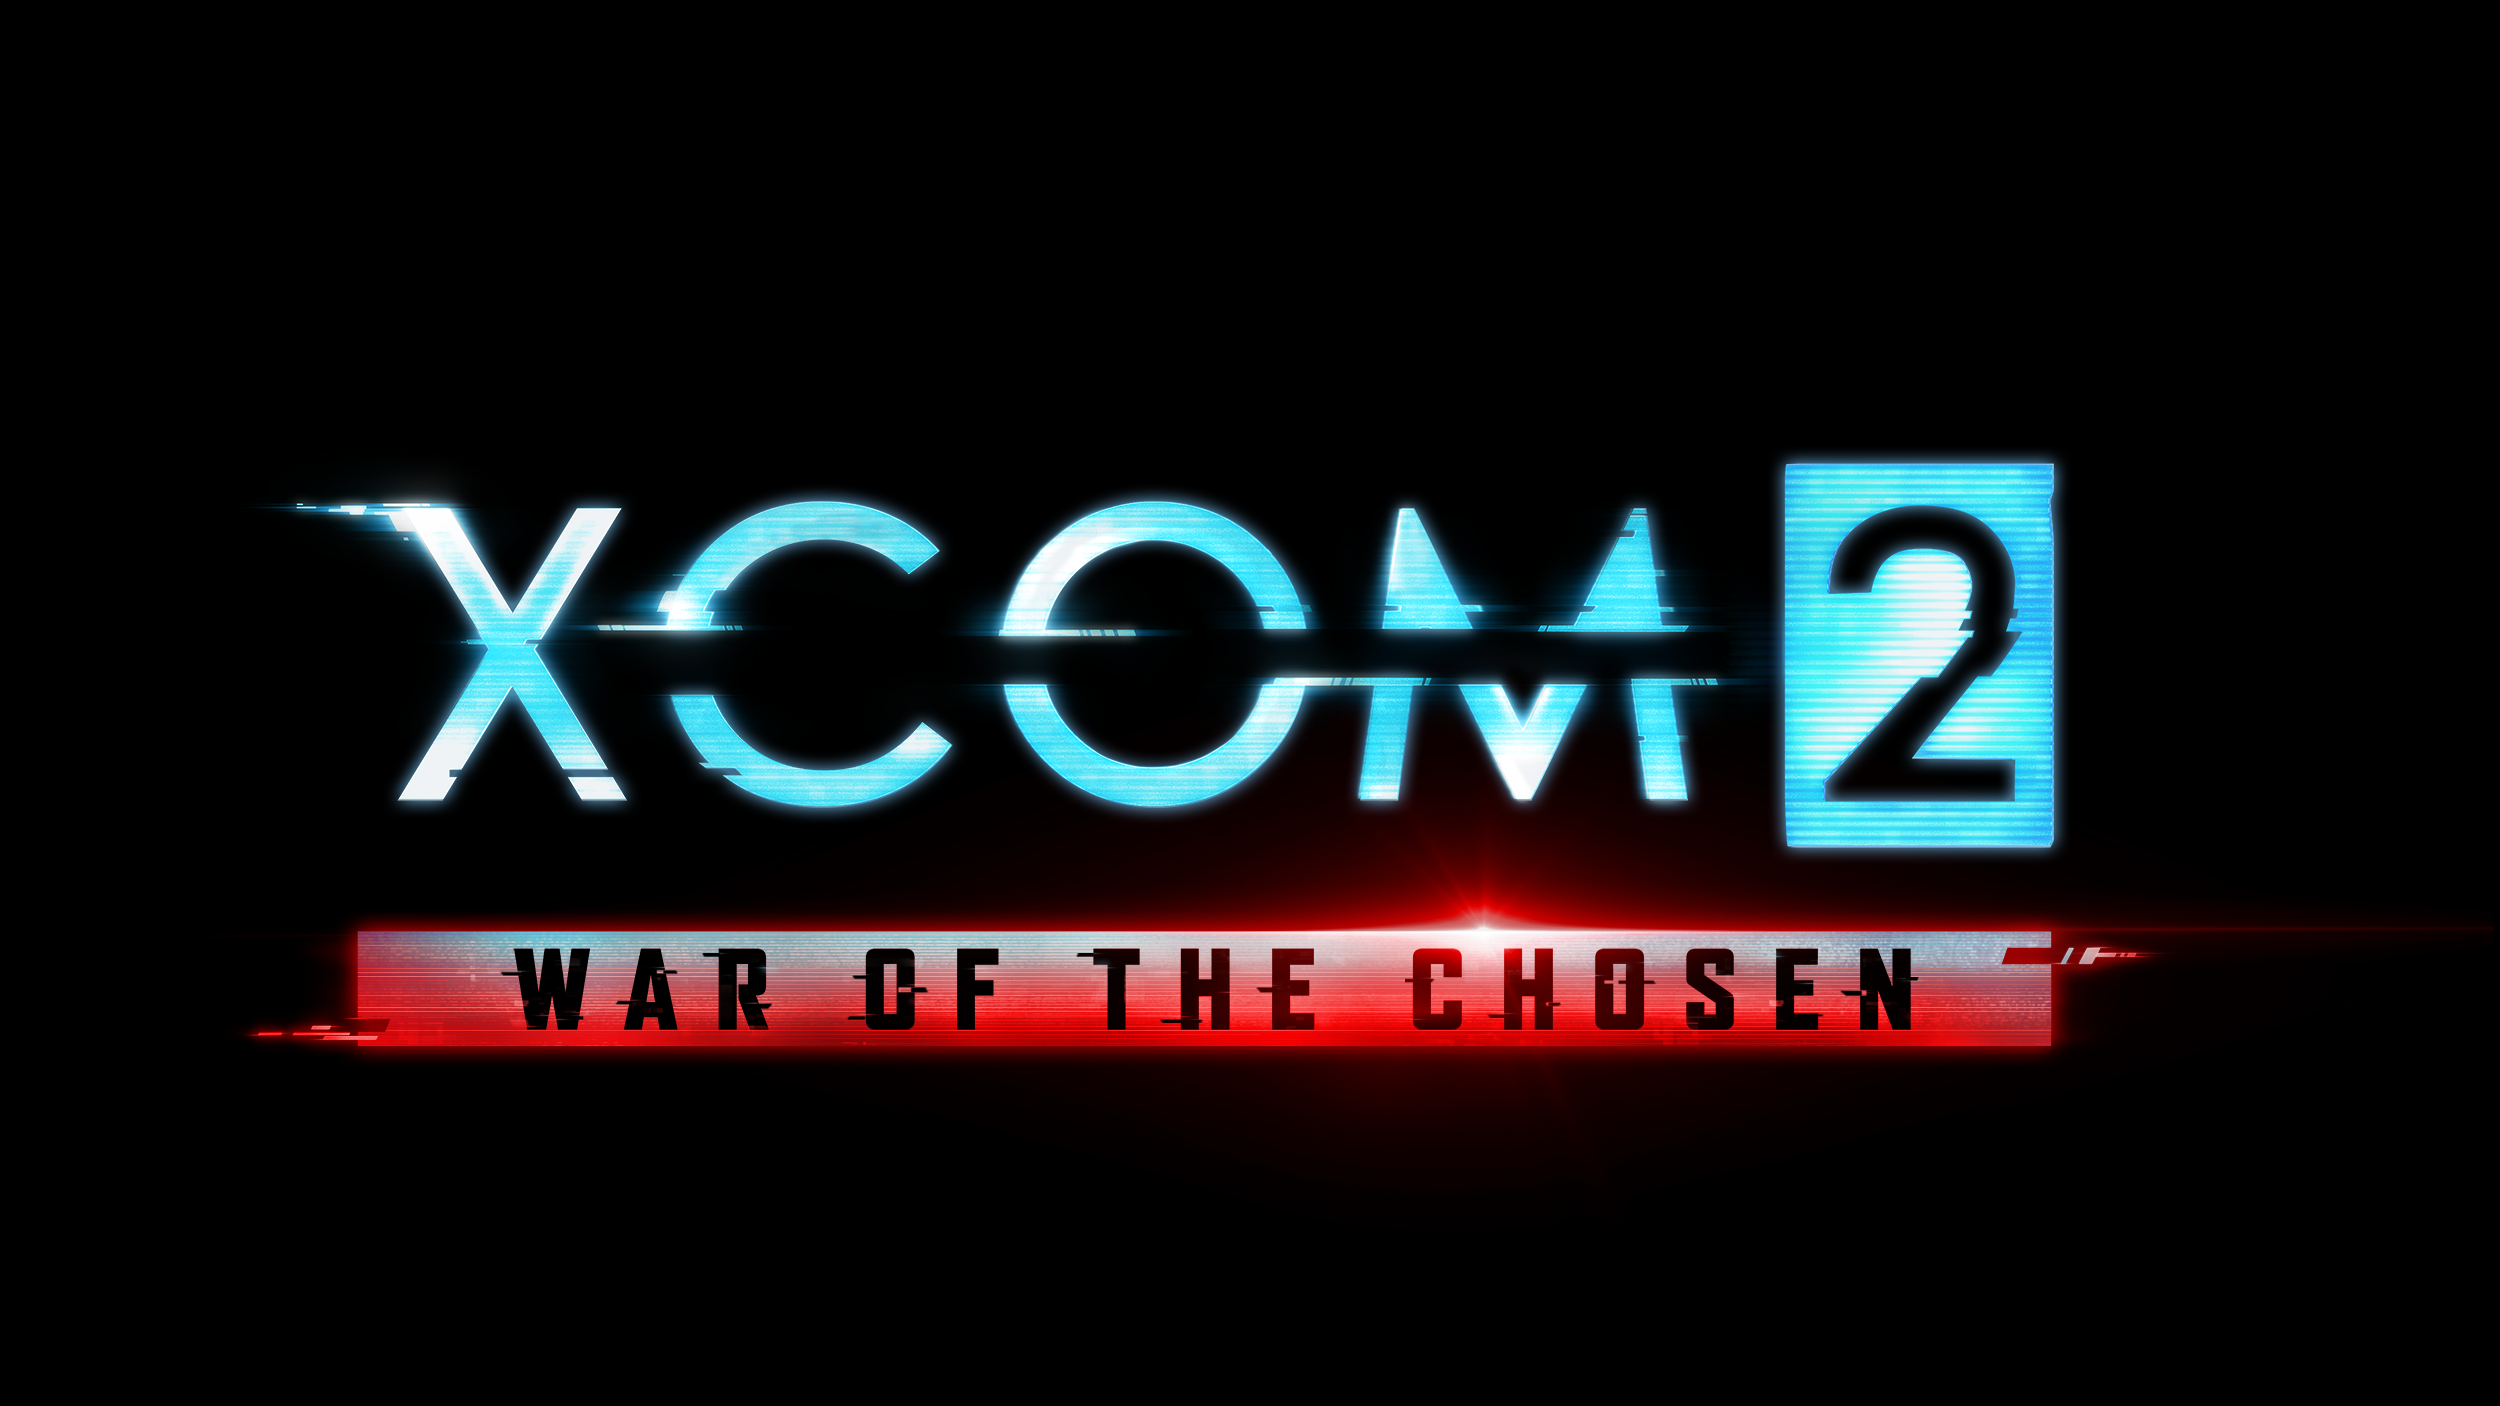 xcom 2 war of the chosen season pass